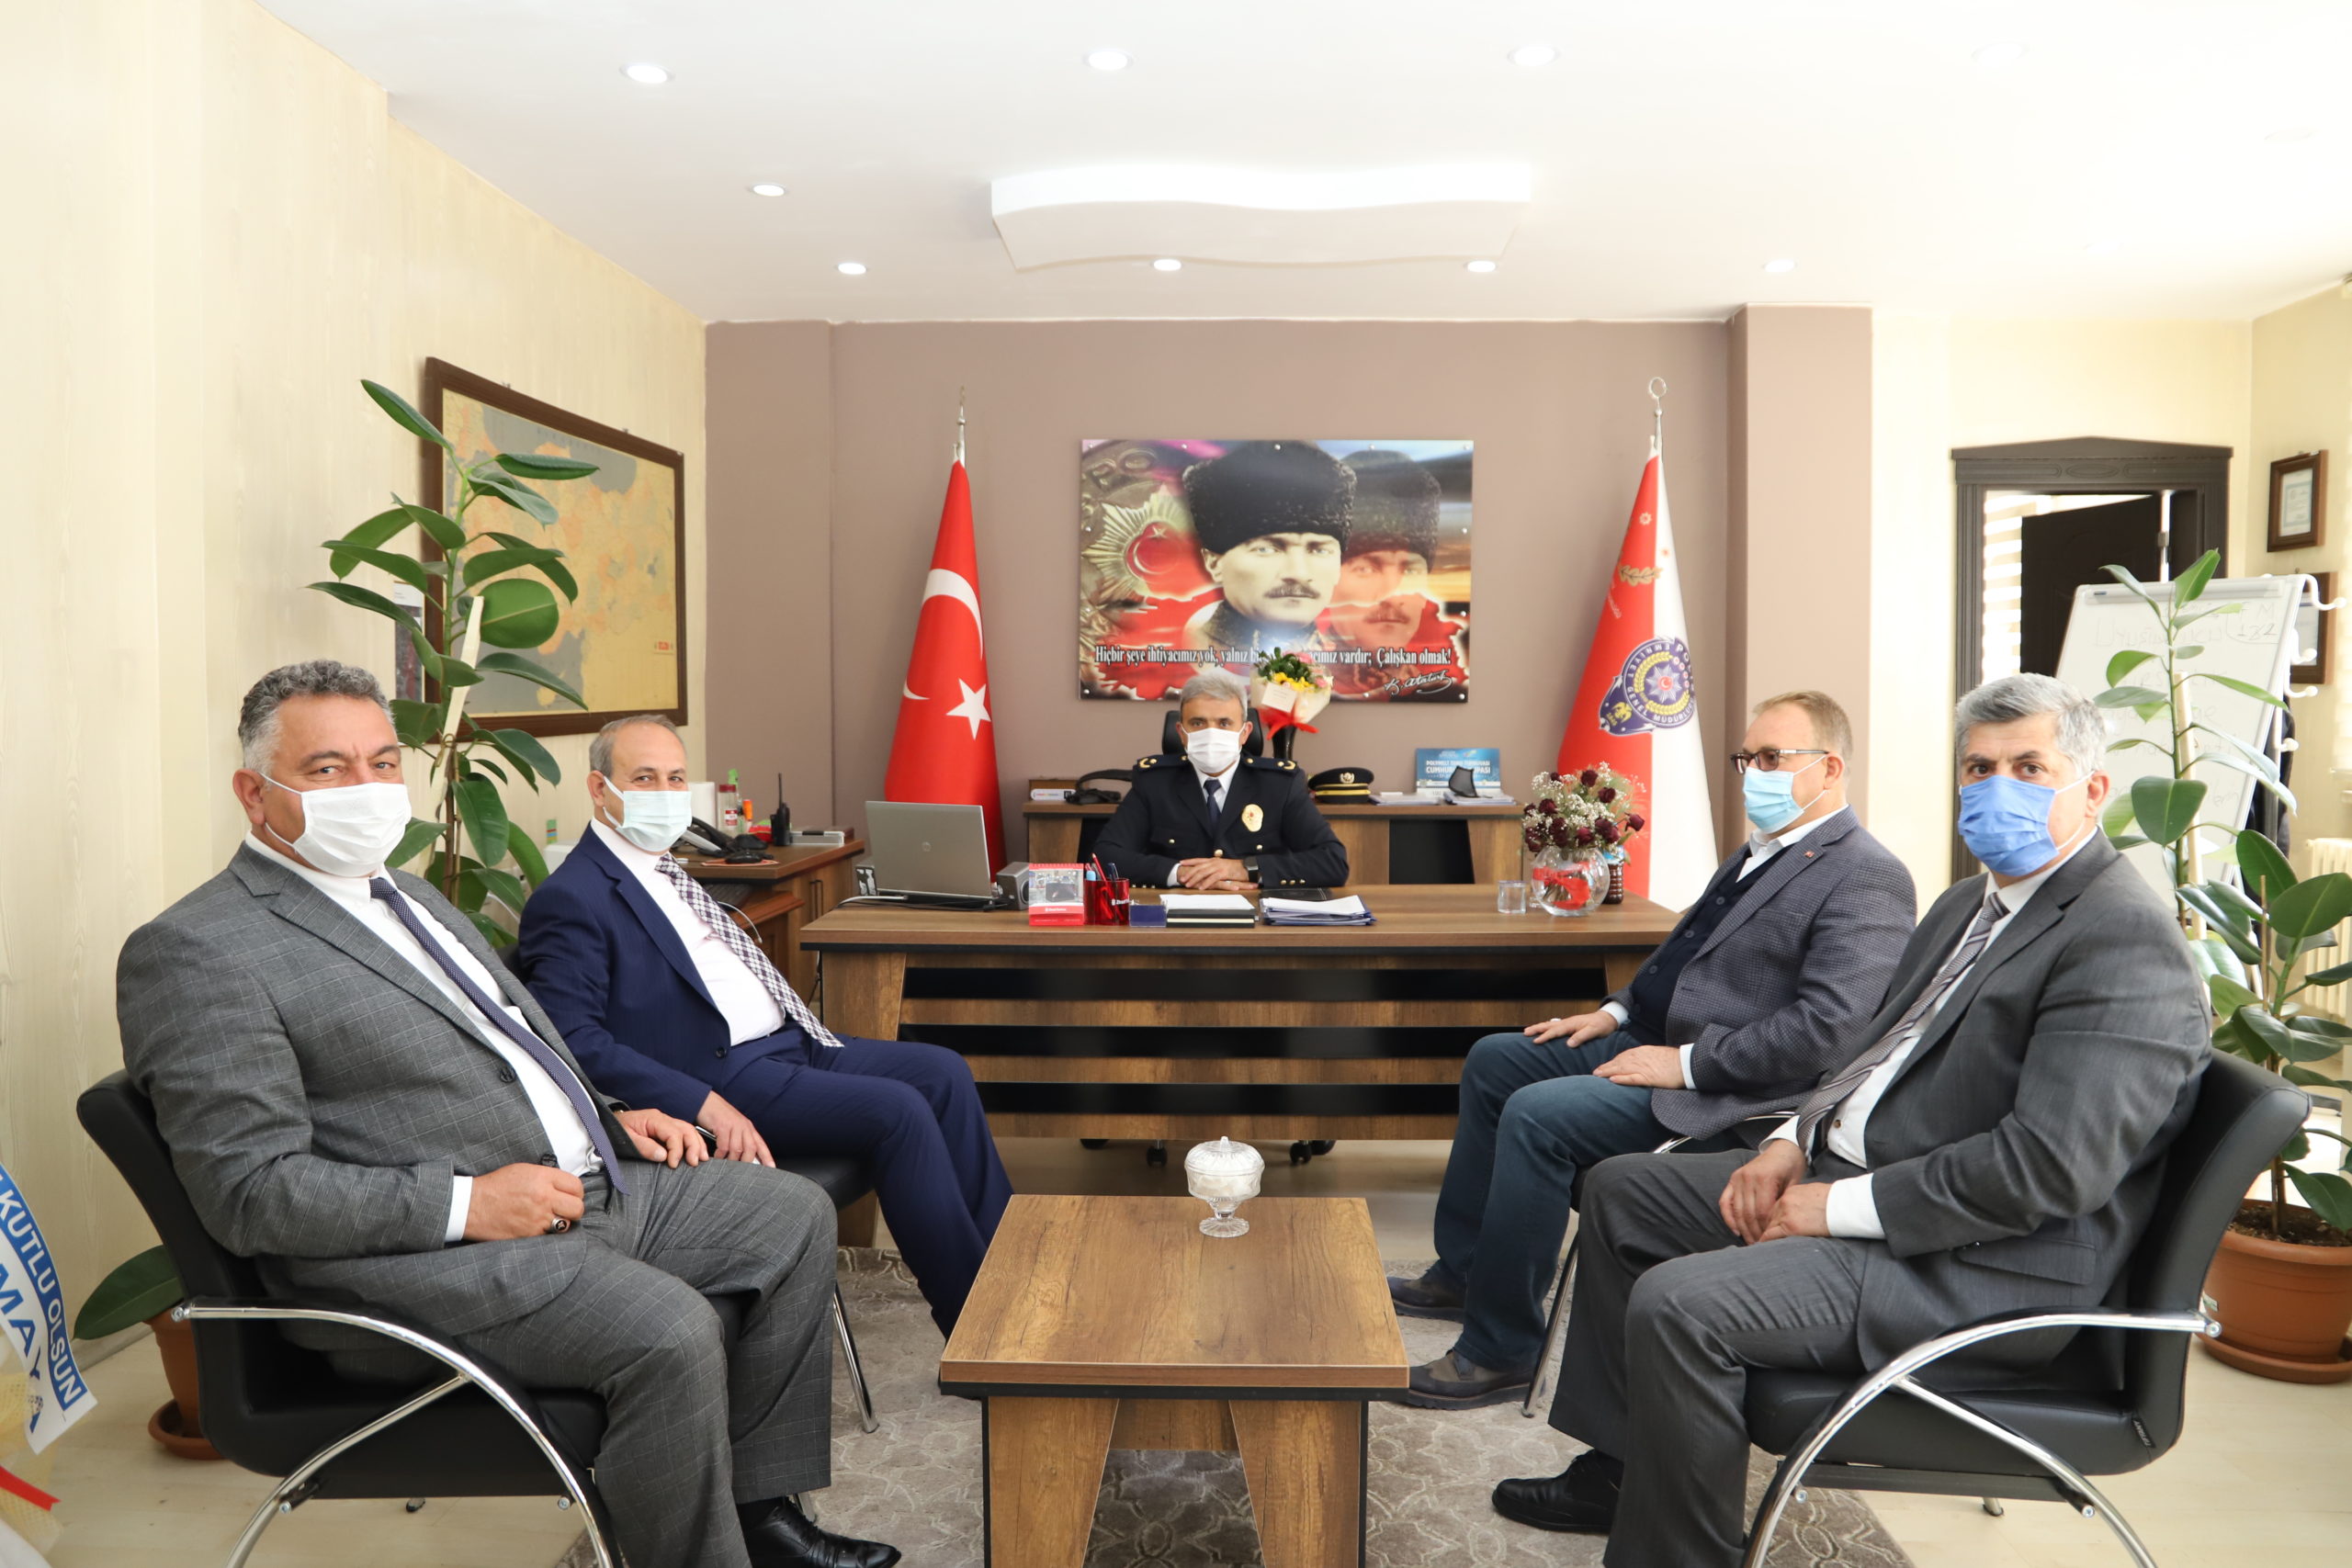  Oğuzeli Belediye Başkanı Kılıç: ‘Emniyet Teşkilatımızla Gurur Duyuyoruz’